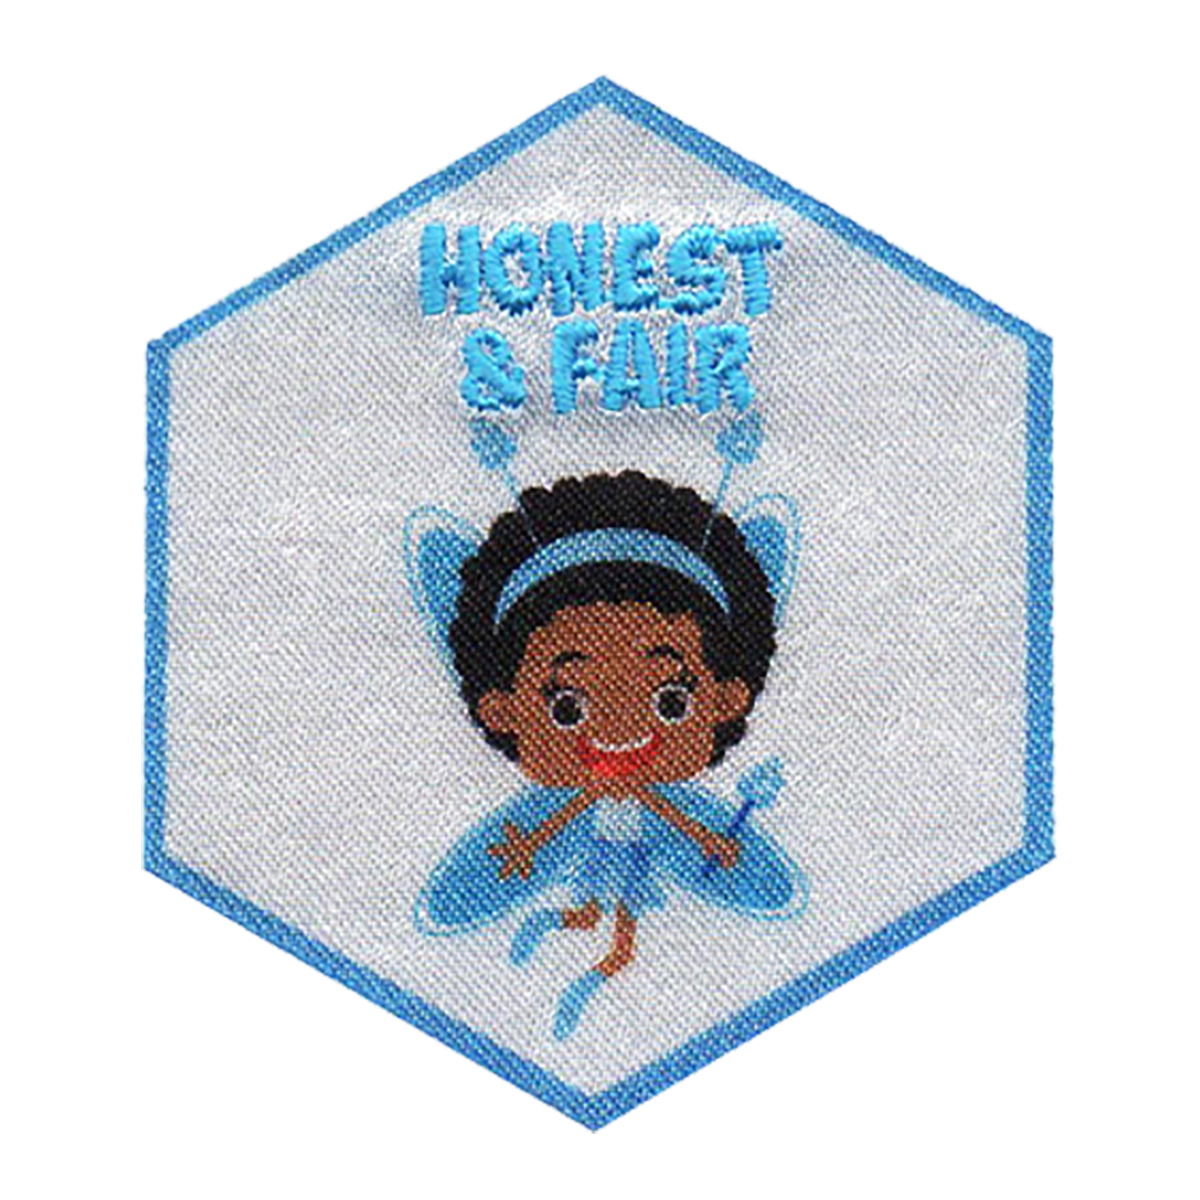 Honest Fairy - W